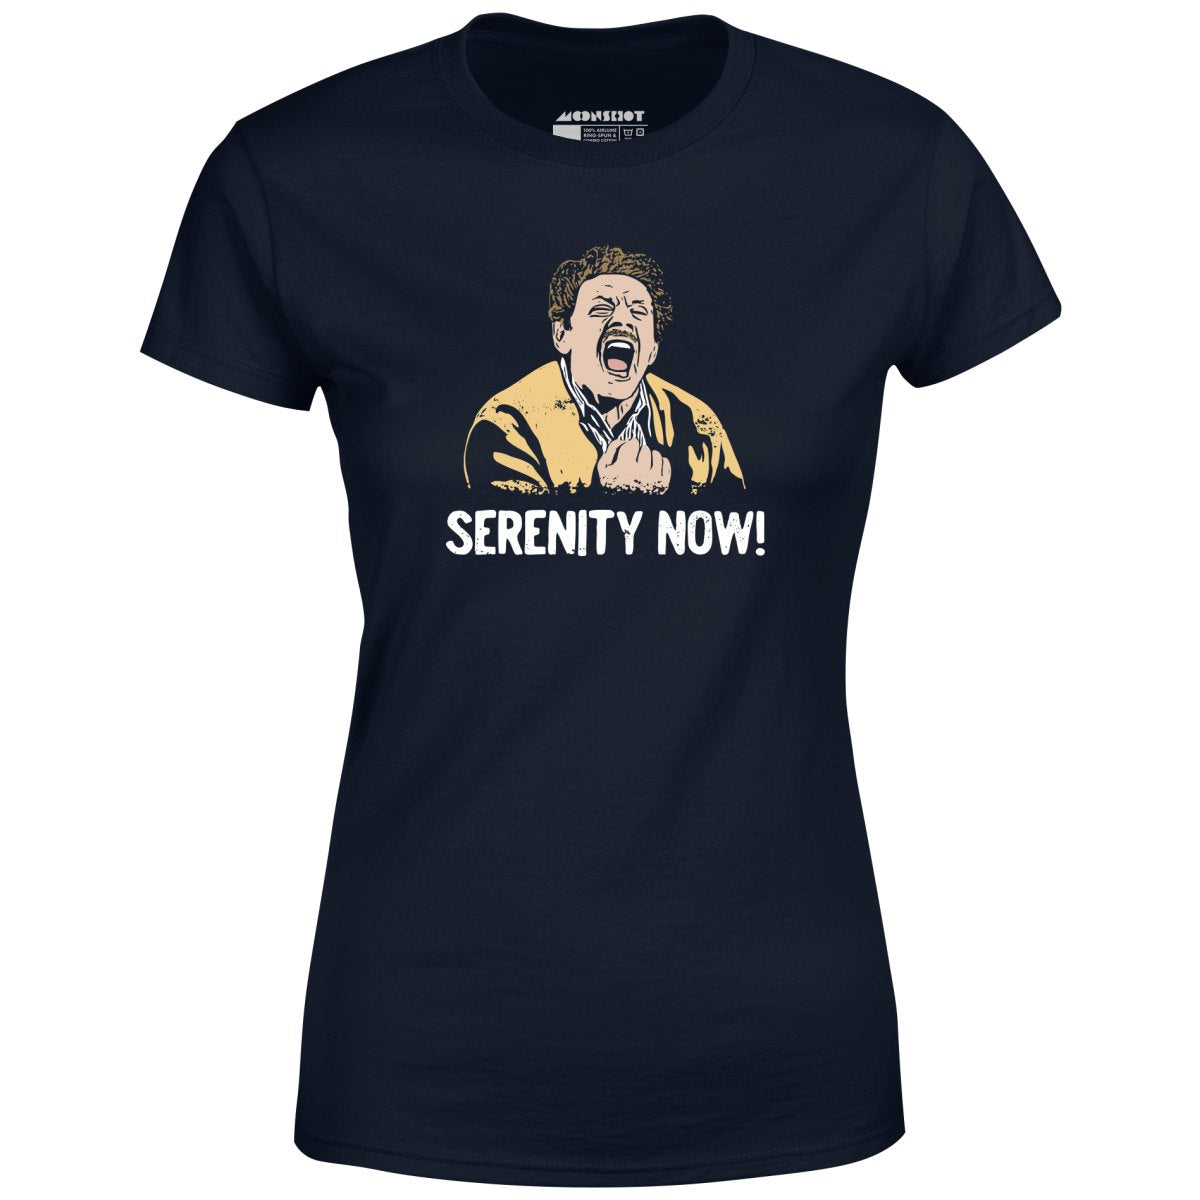 Serenity Now! - Women's T-Shirt